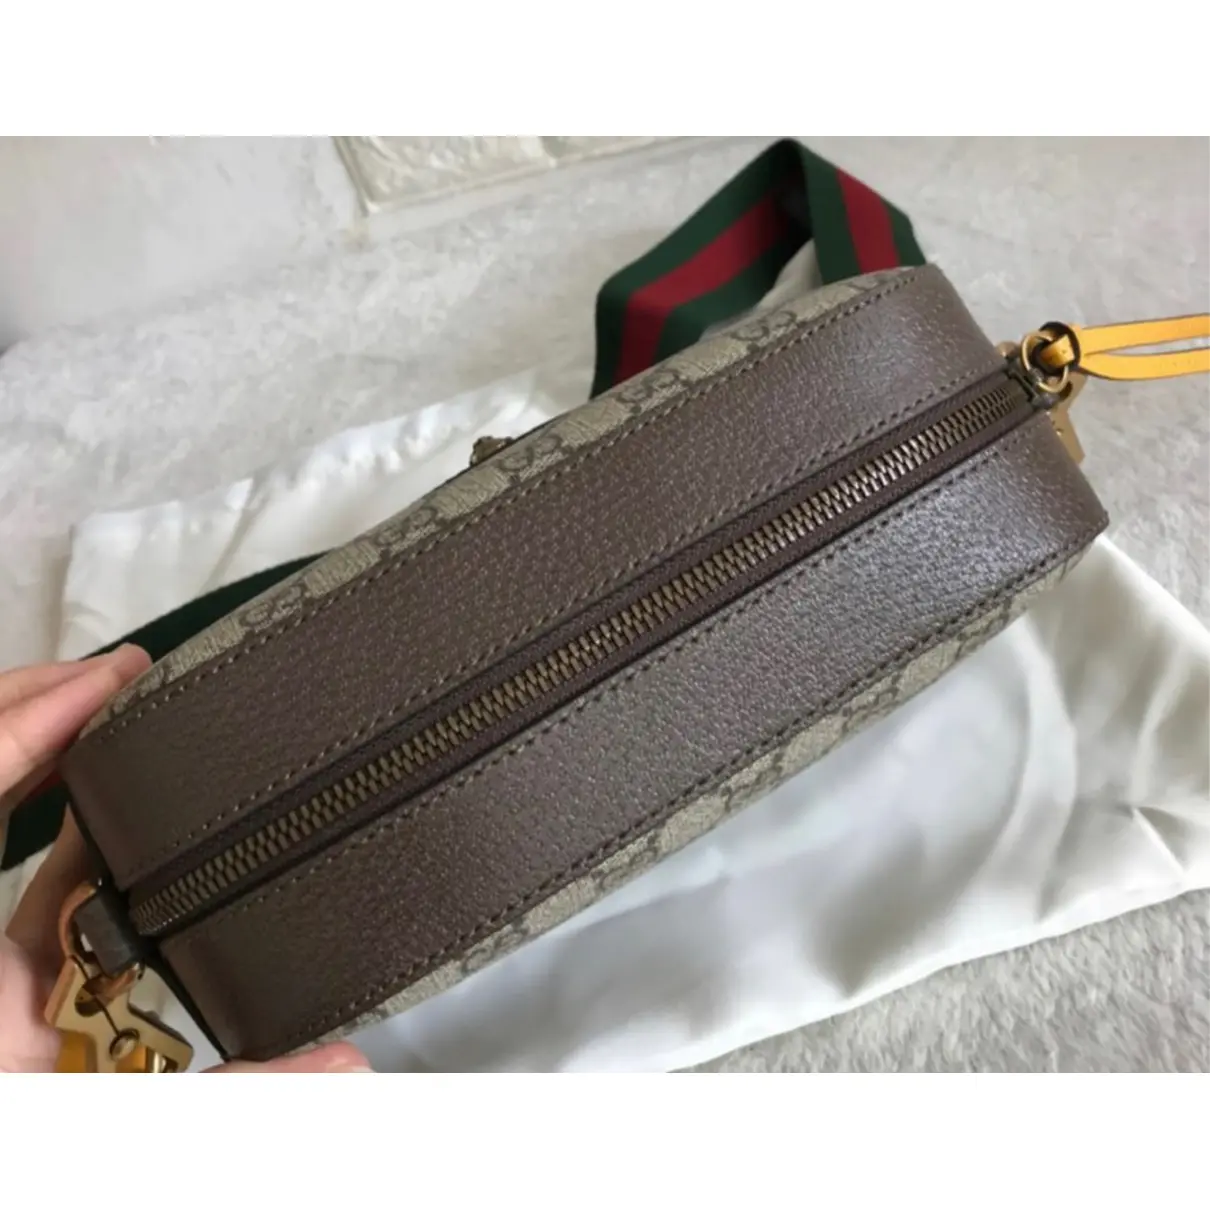 Buy Gucci Neo Vintage cloth handbag online